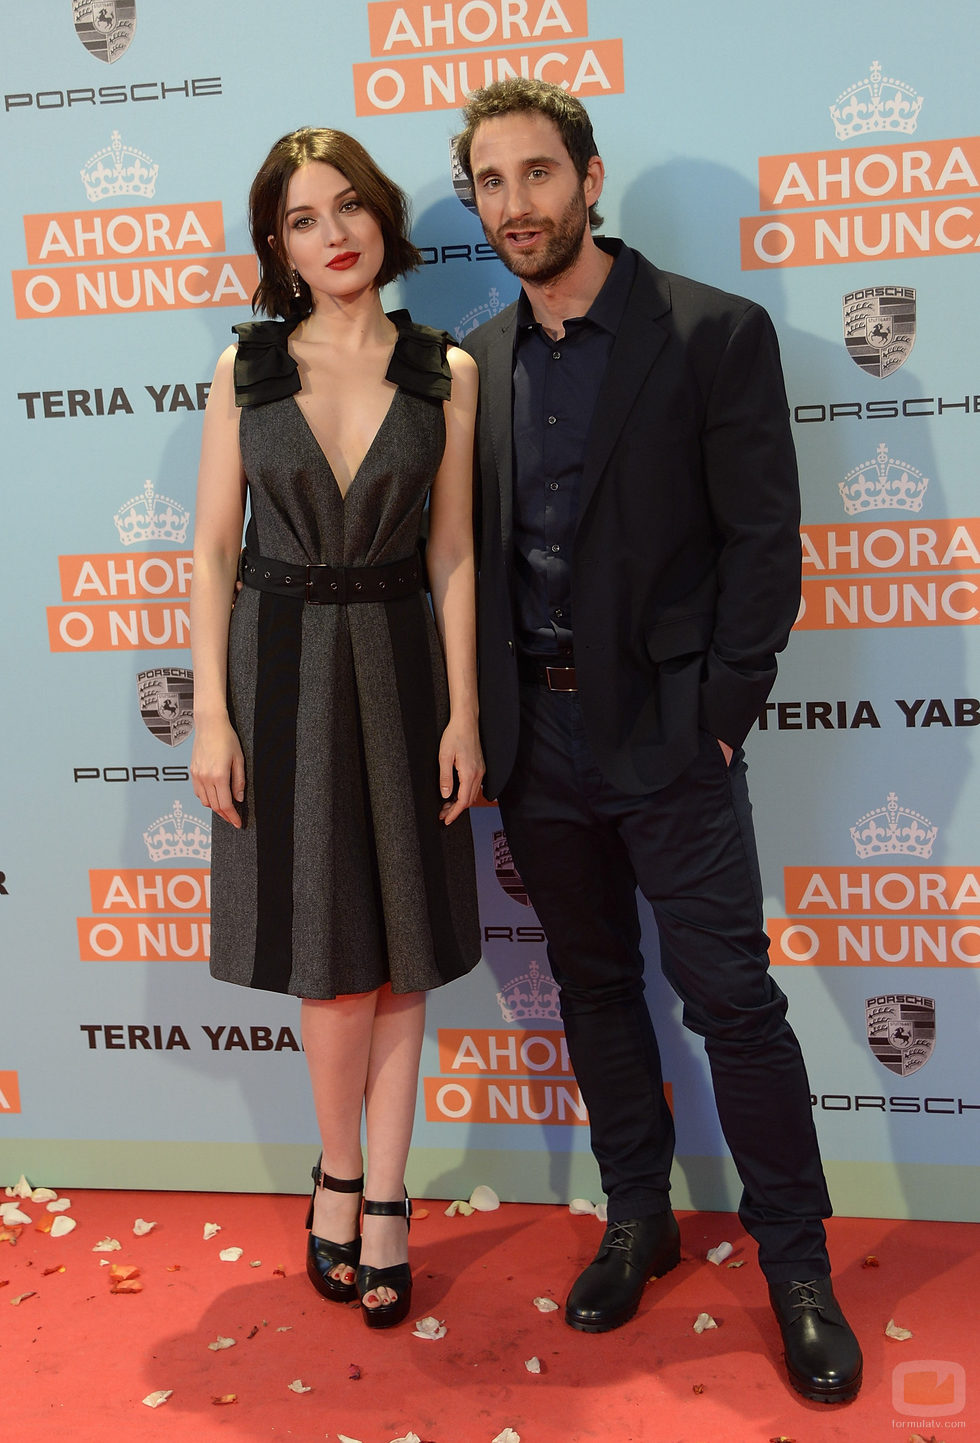 María Valverde y Dani Rovira en la premiere de la película "Ahora o nunca"